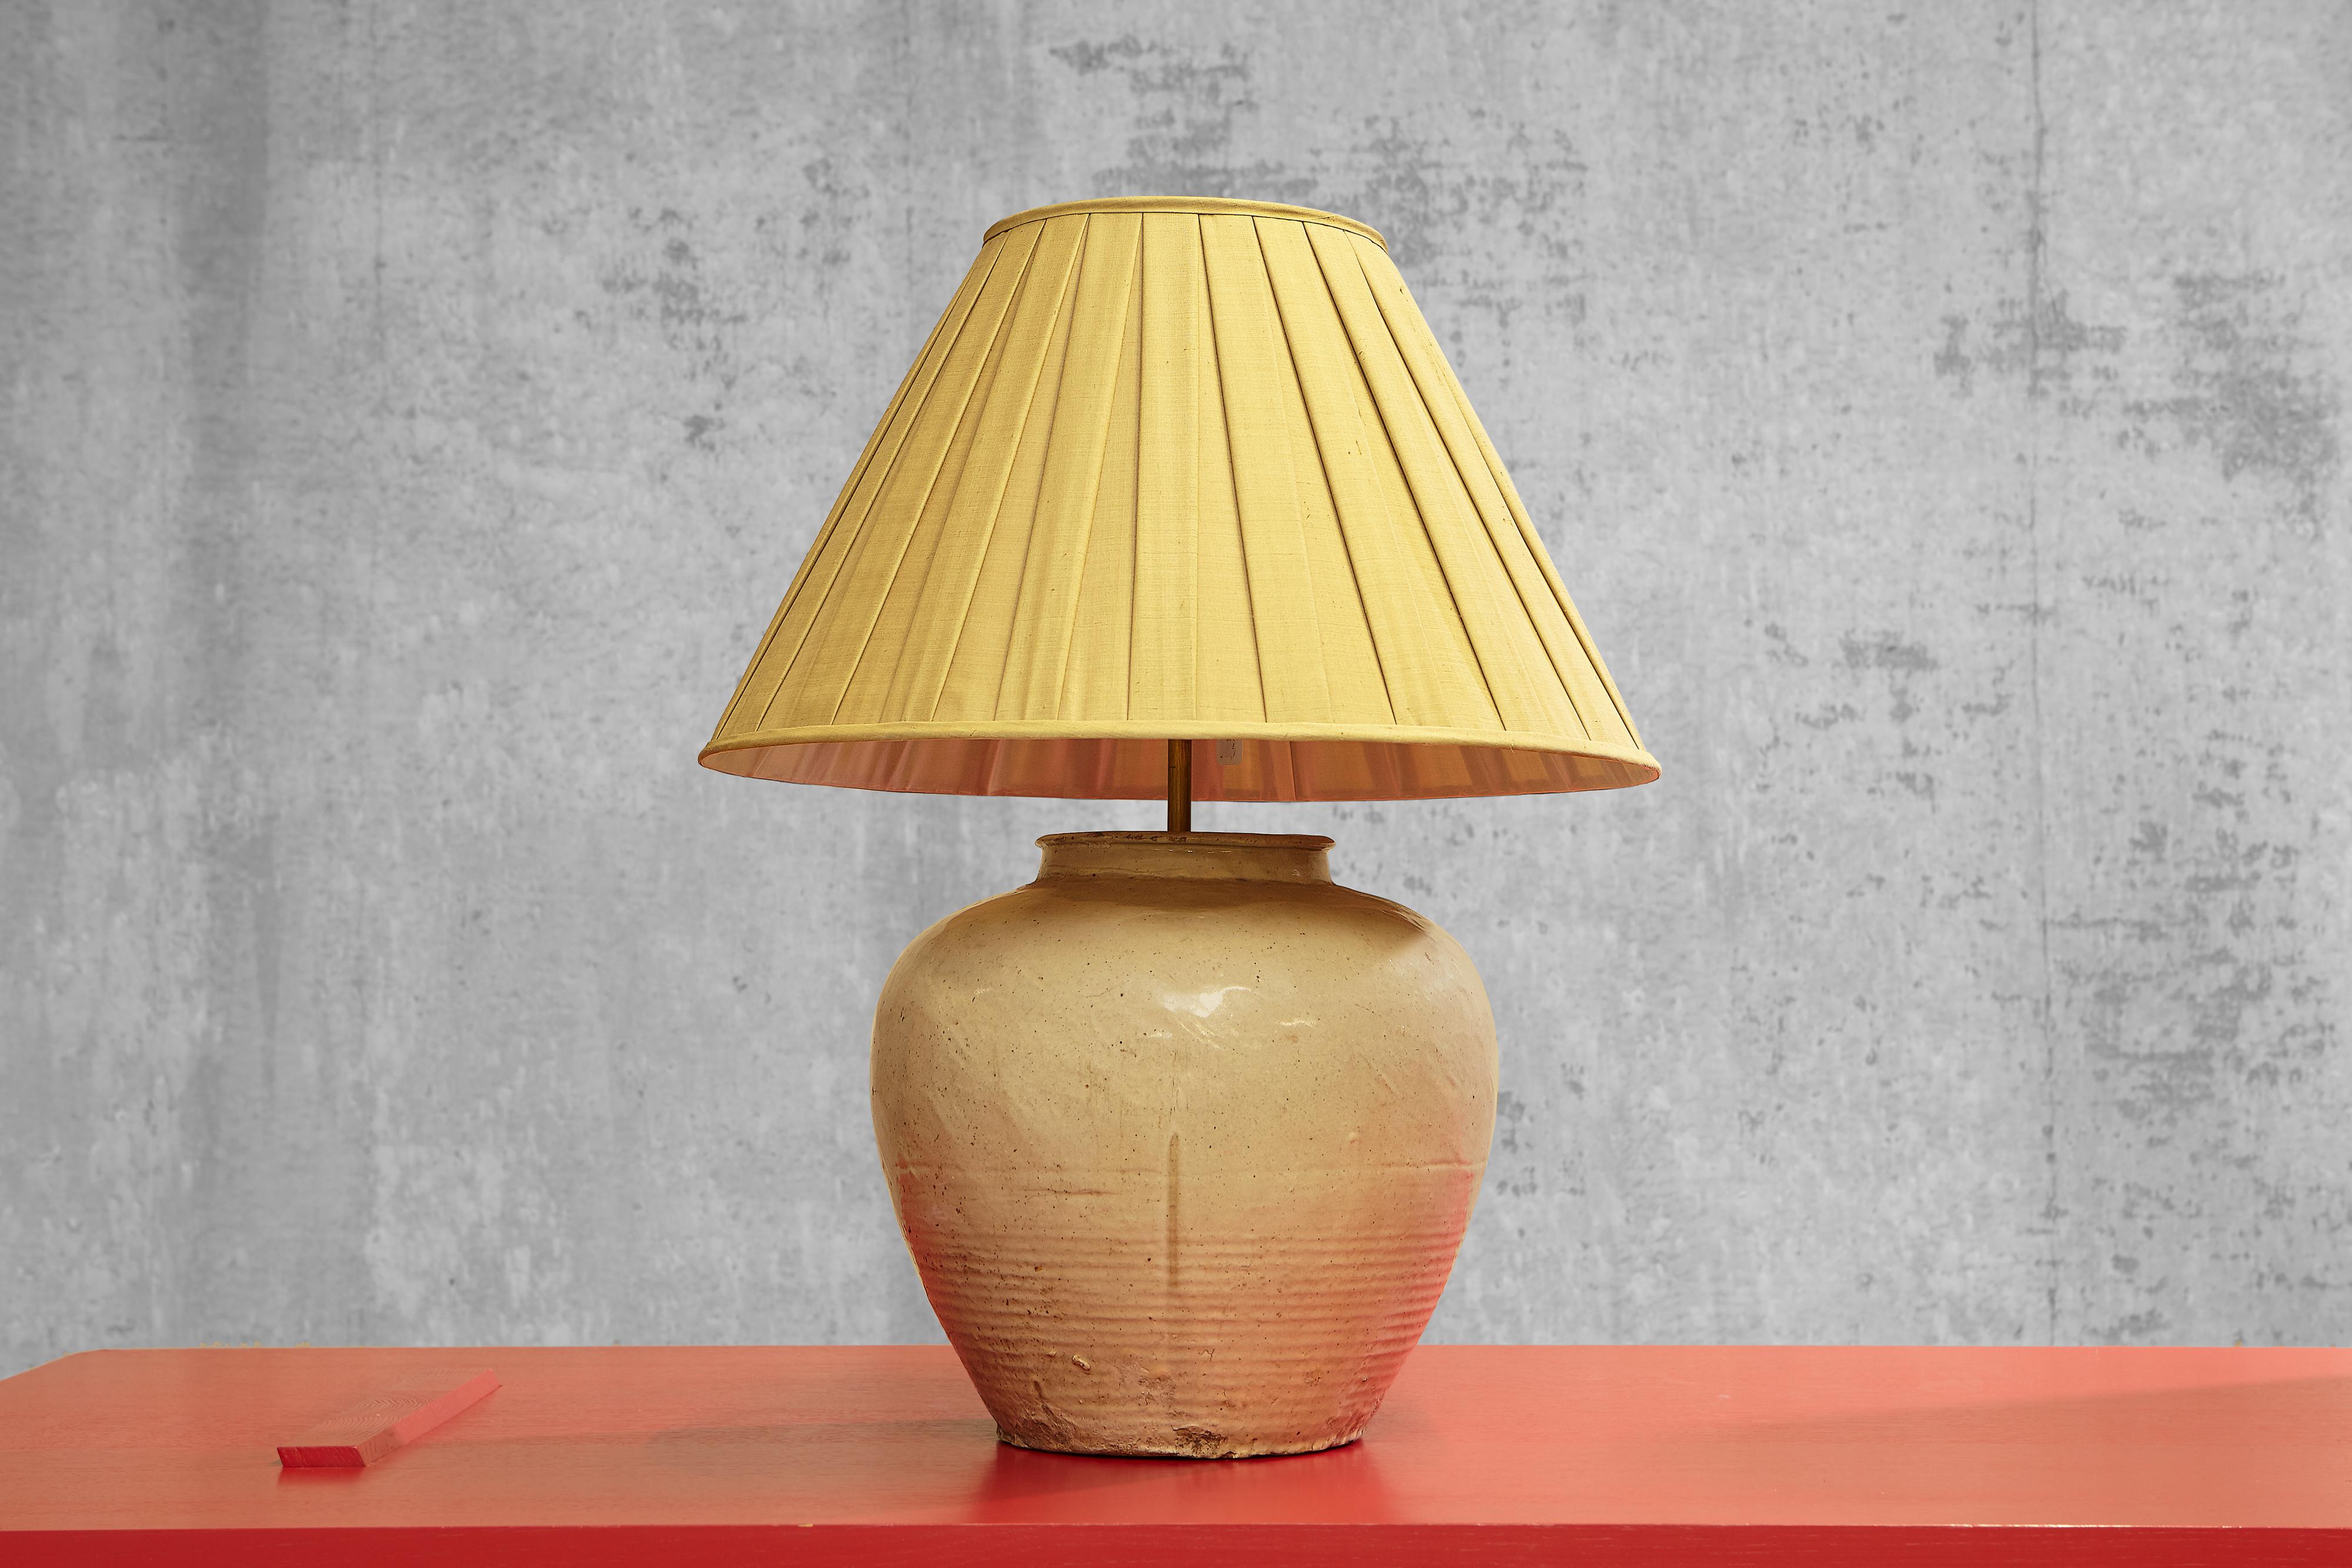 Cette magnifique lampe de table est fabriquée en poterie émaillée chinoise et présente des tons gris clair et sable. La lampe en poterie émaillée de forme ronde attire l'attention de manière simple mais élégante. La poterie émaillée est un matériau